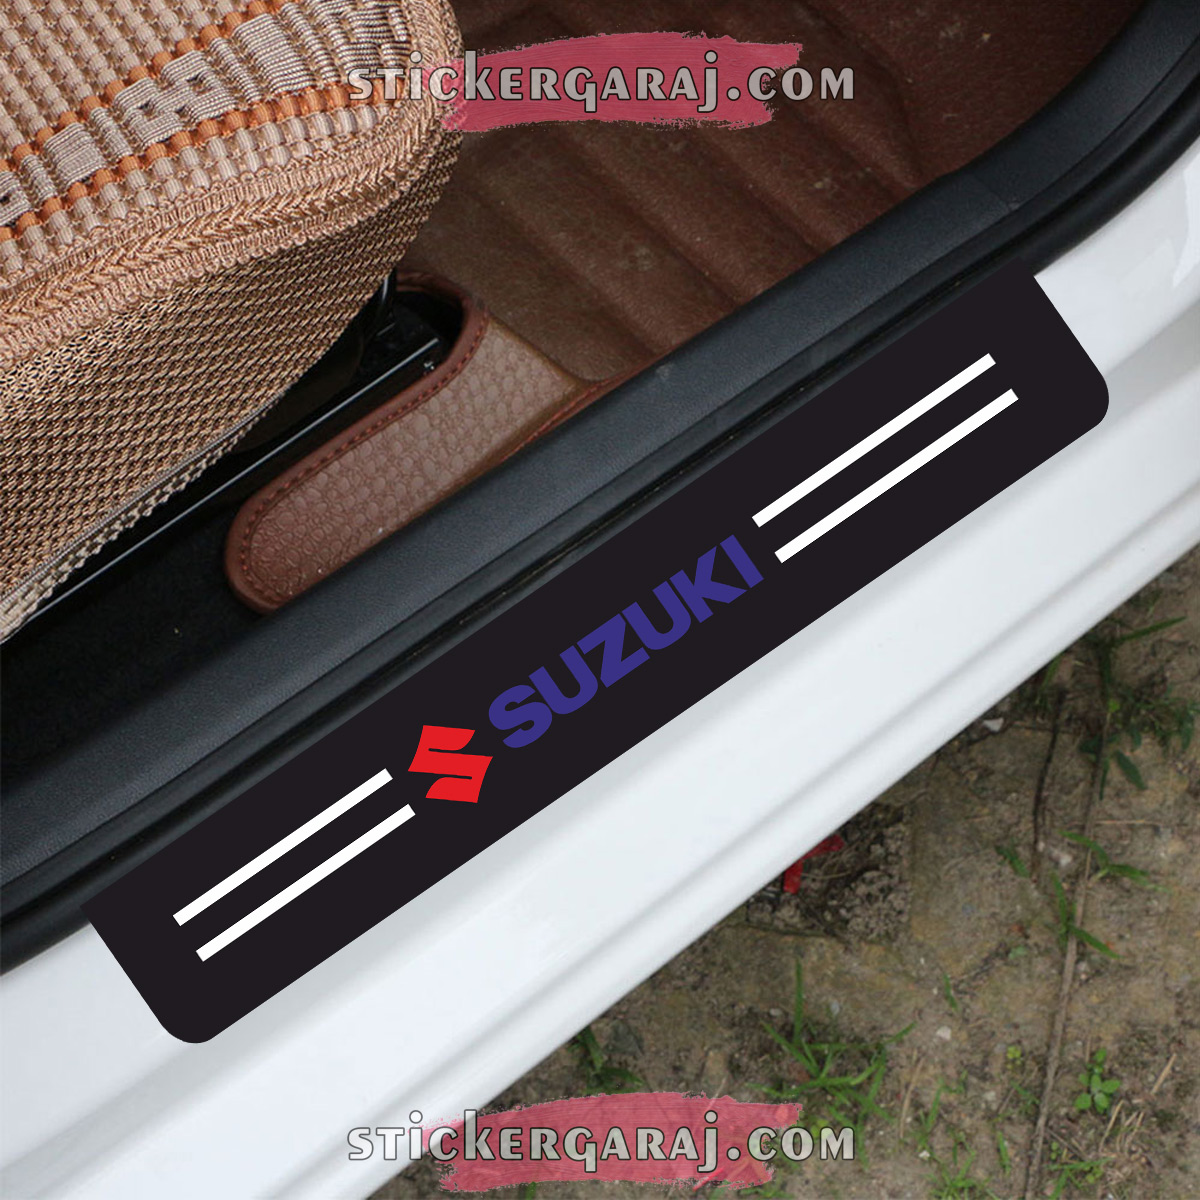 suzuki sticker - Suzuki kapı eşiği sticker